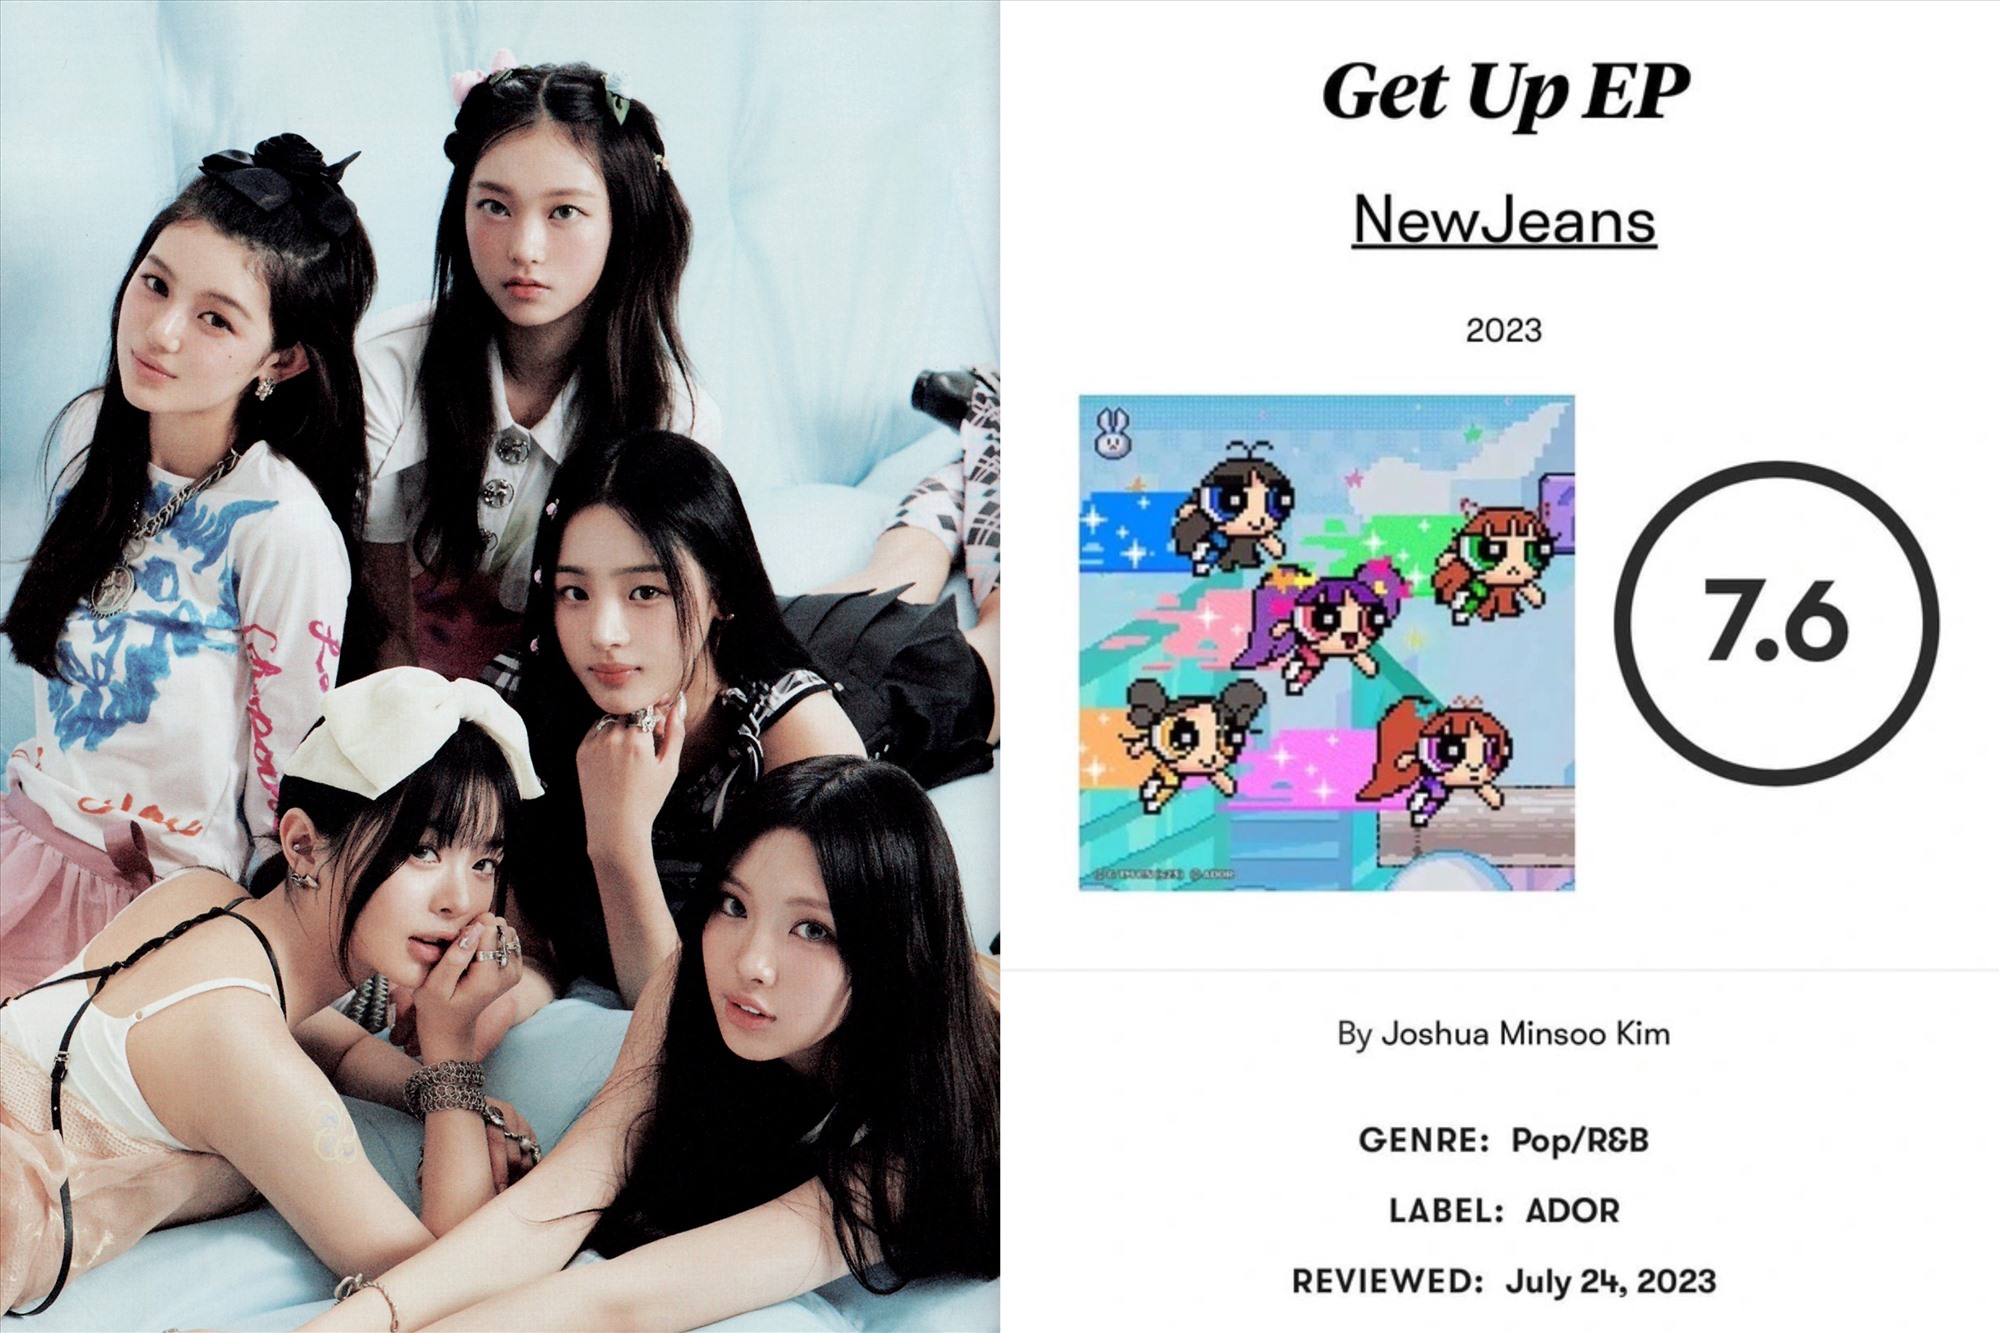 “Get Up” là album của nhóm nhạc nữ Kpop được chấm điểm cao nhất bởi 